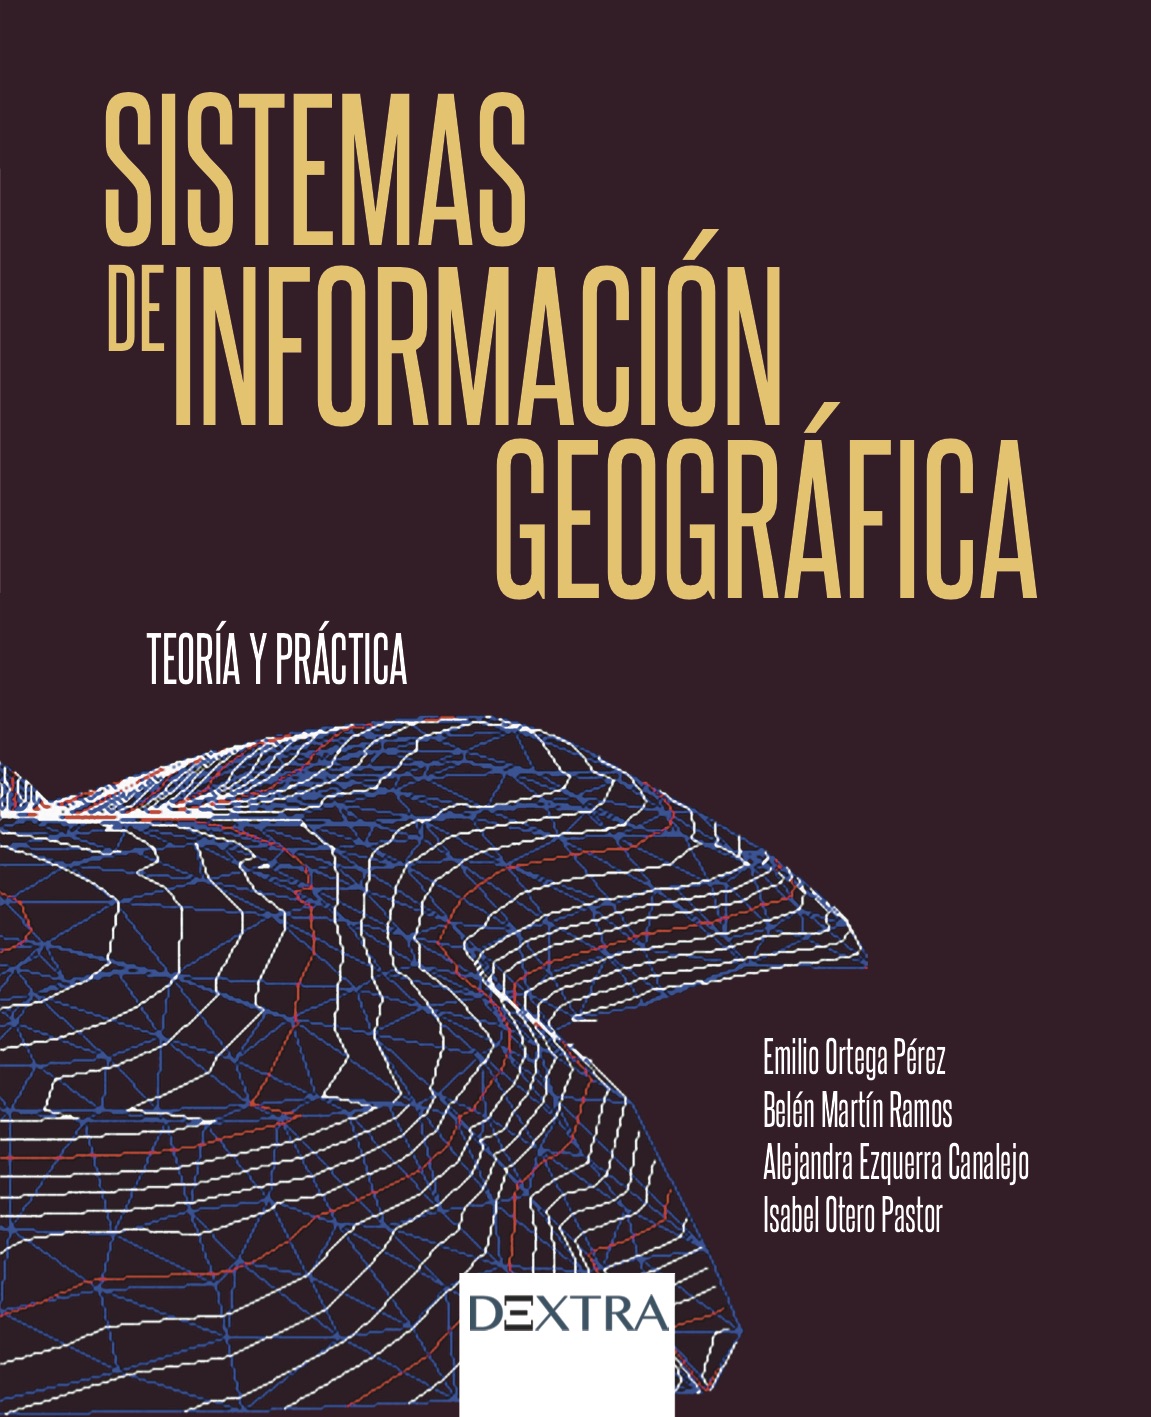 Sistemas de información geográfica : teoría y práctica / Emilio Ortega Pérez, Belén Martín Ramos, Alejandra Ezquerra Canalejo, Isabel Otero Pastor